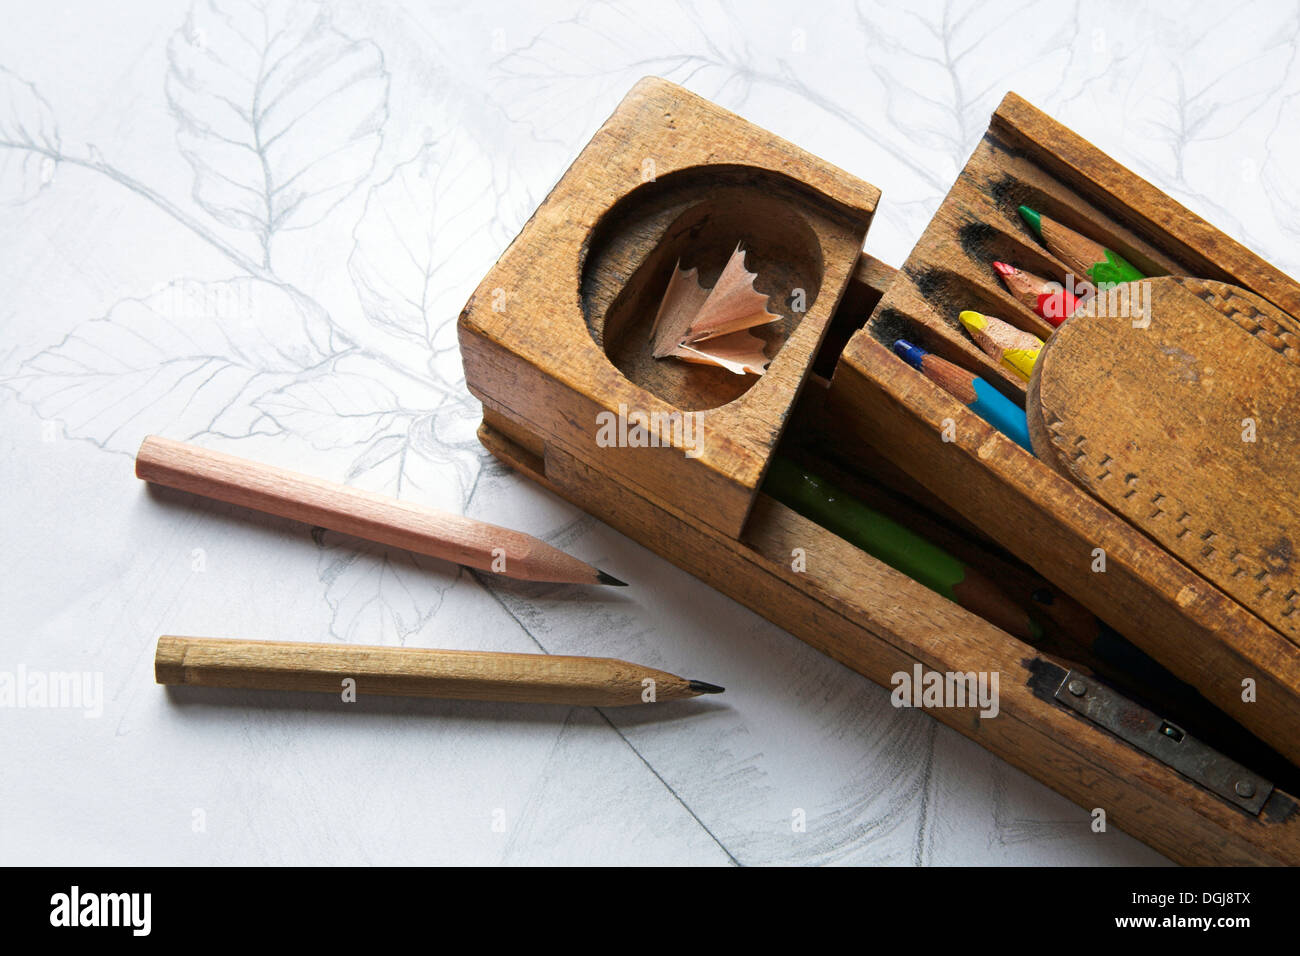 https://c8.alamy.com/comp/DGJ8TX/handmade-wooden-pencil-case-and-pencils-DGJ8TX.jpg